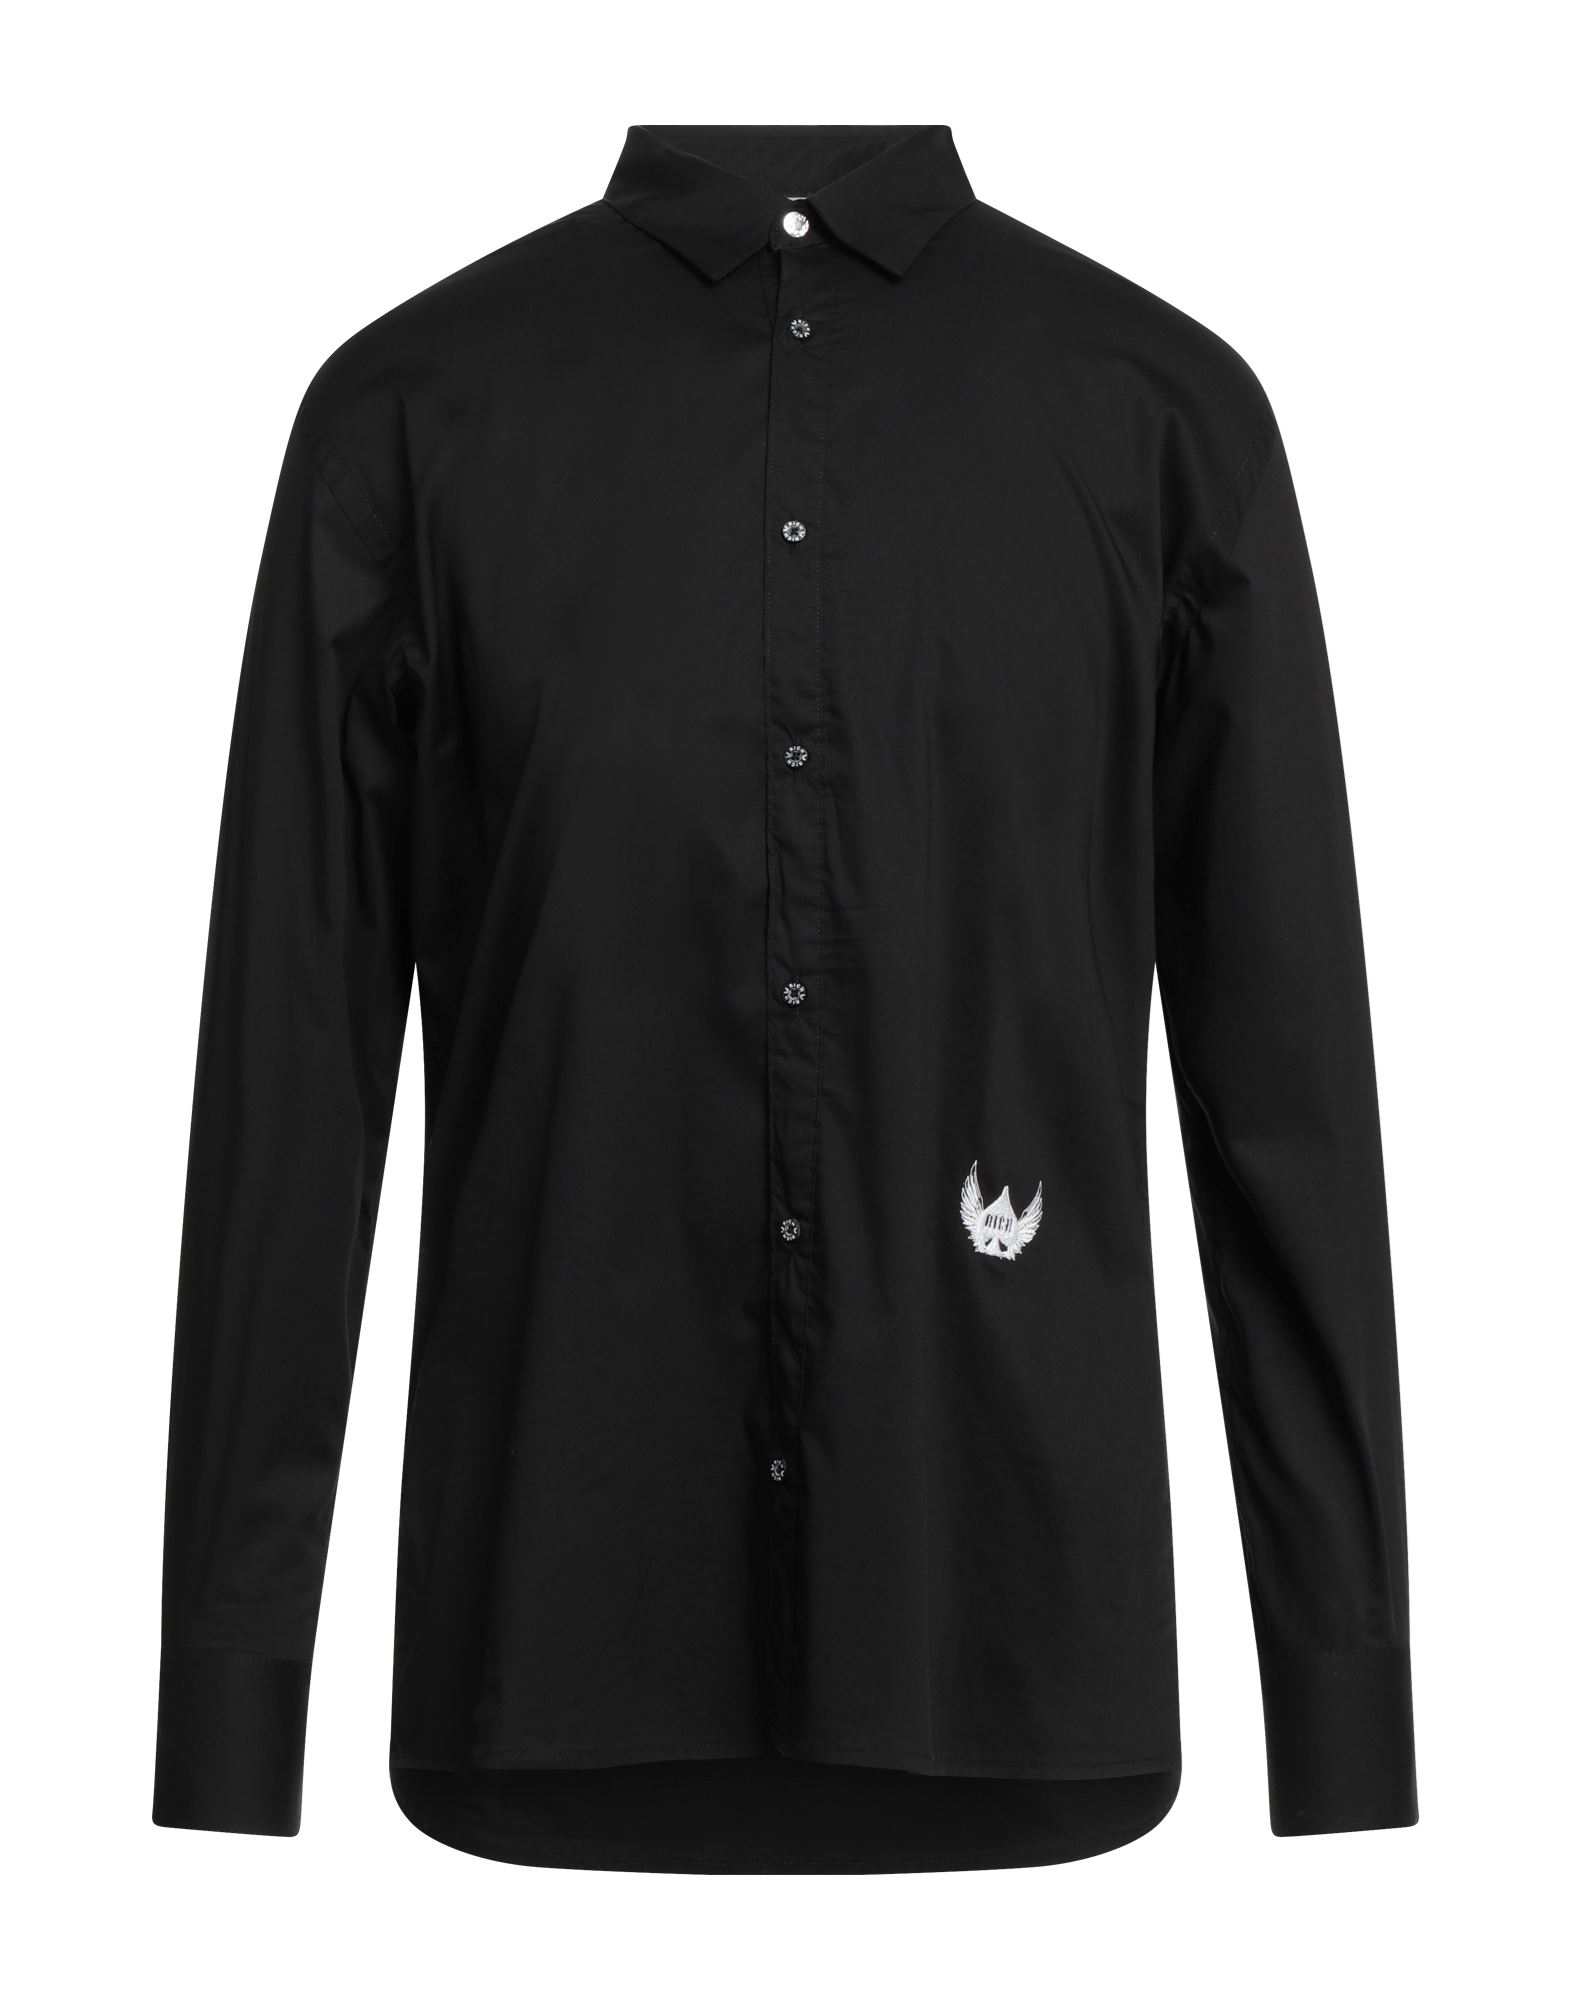 Shop Rich Man Shirt Black Size Xl Nylon, Elastane, Cotton